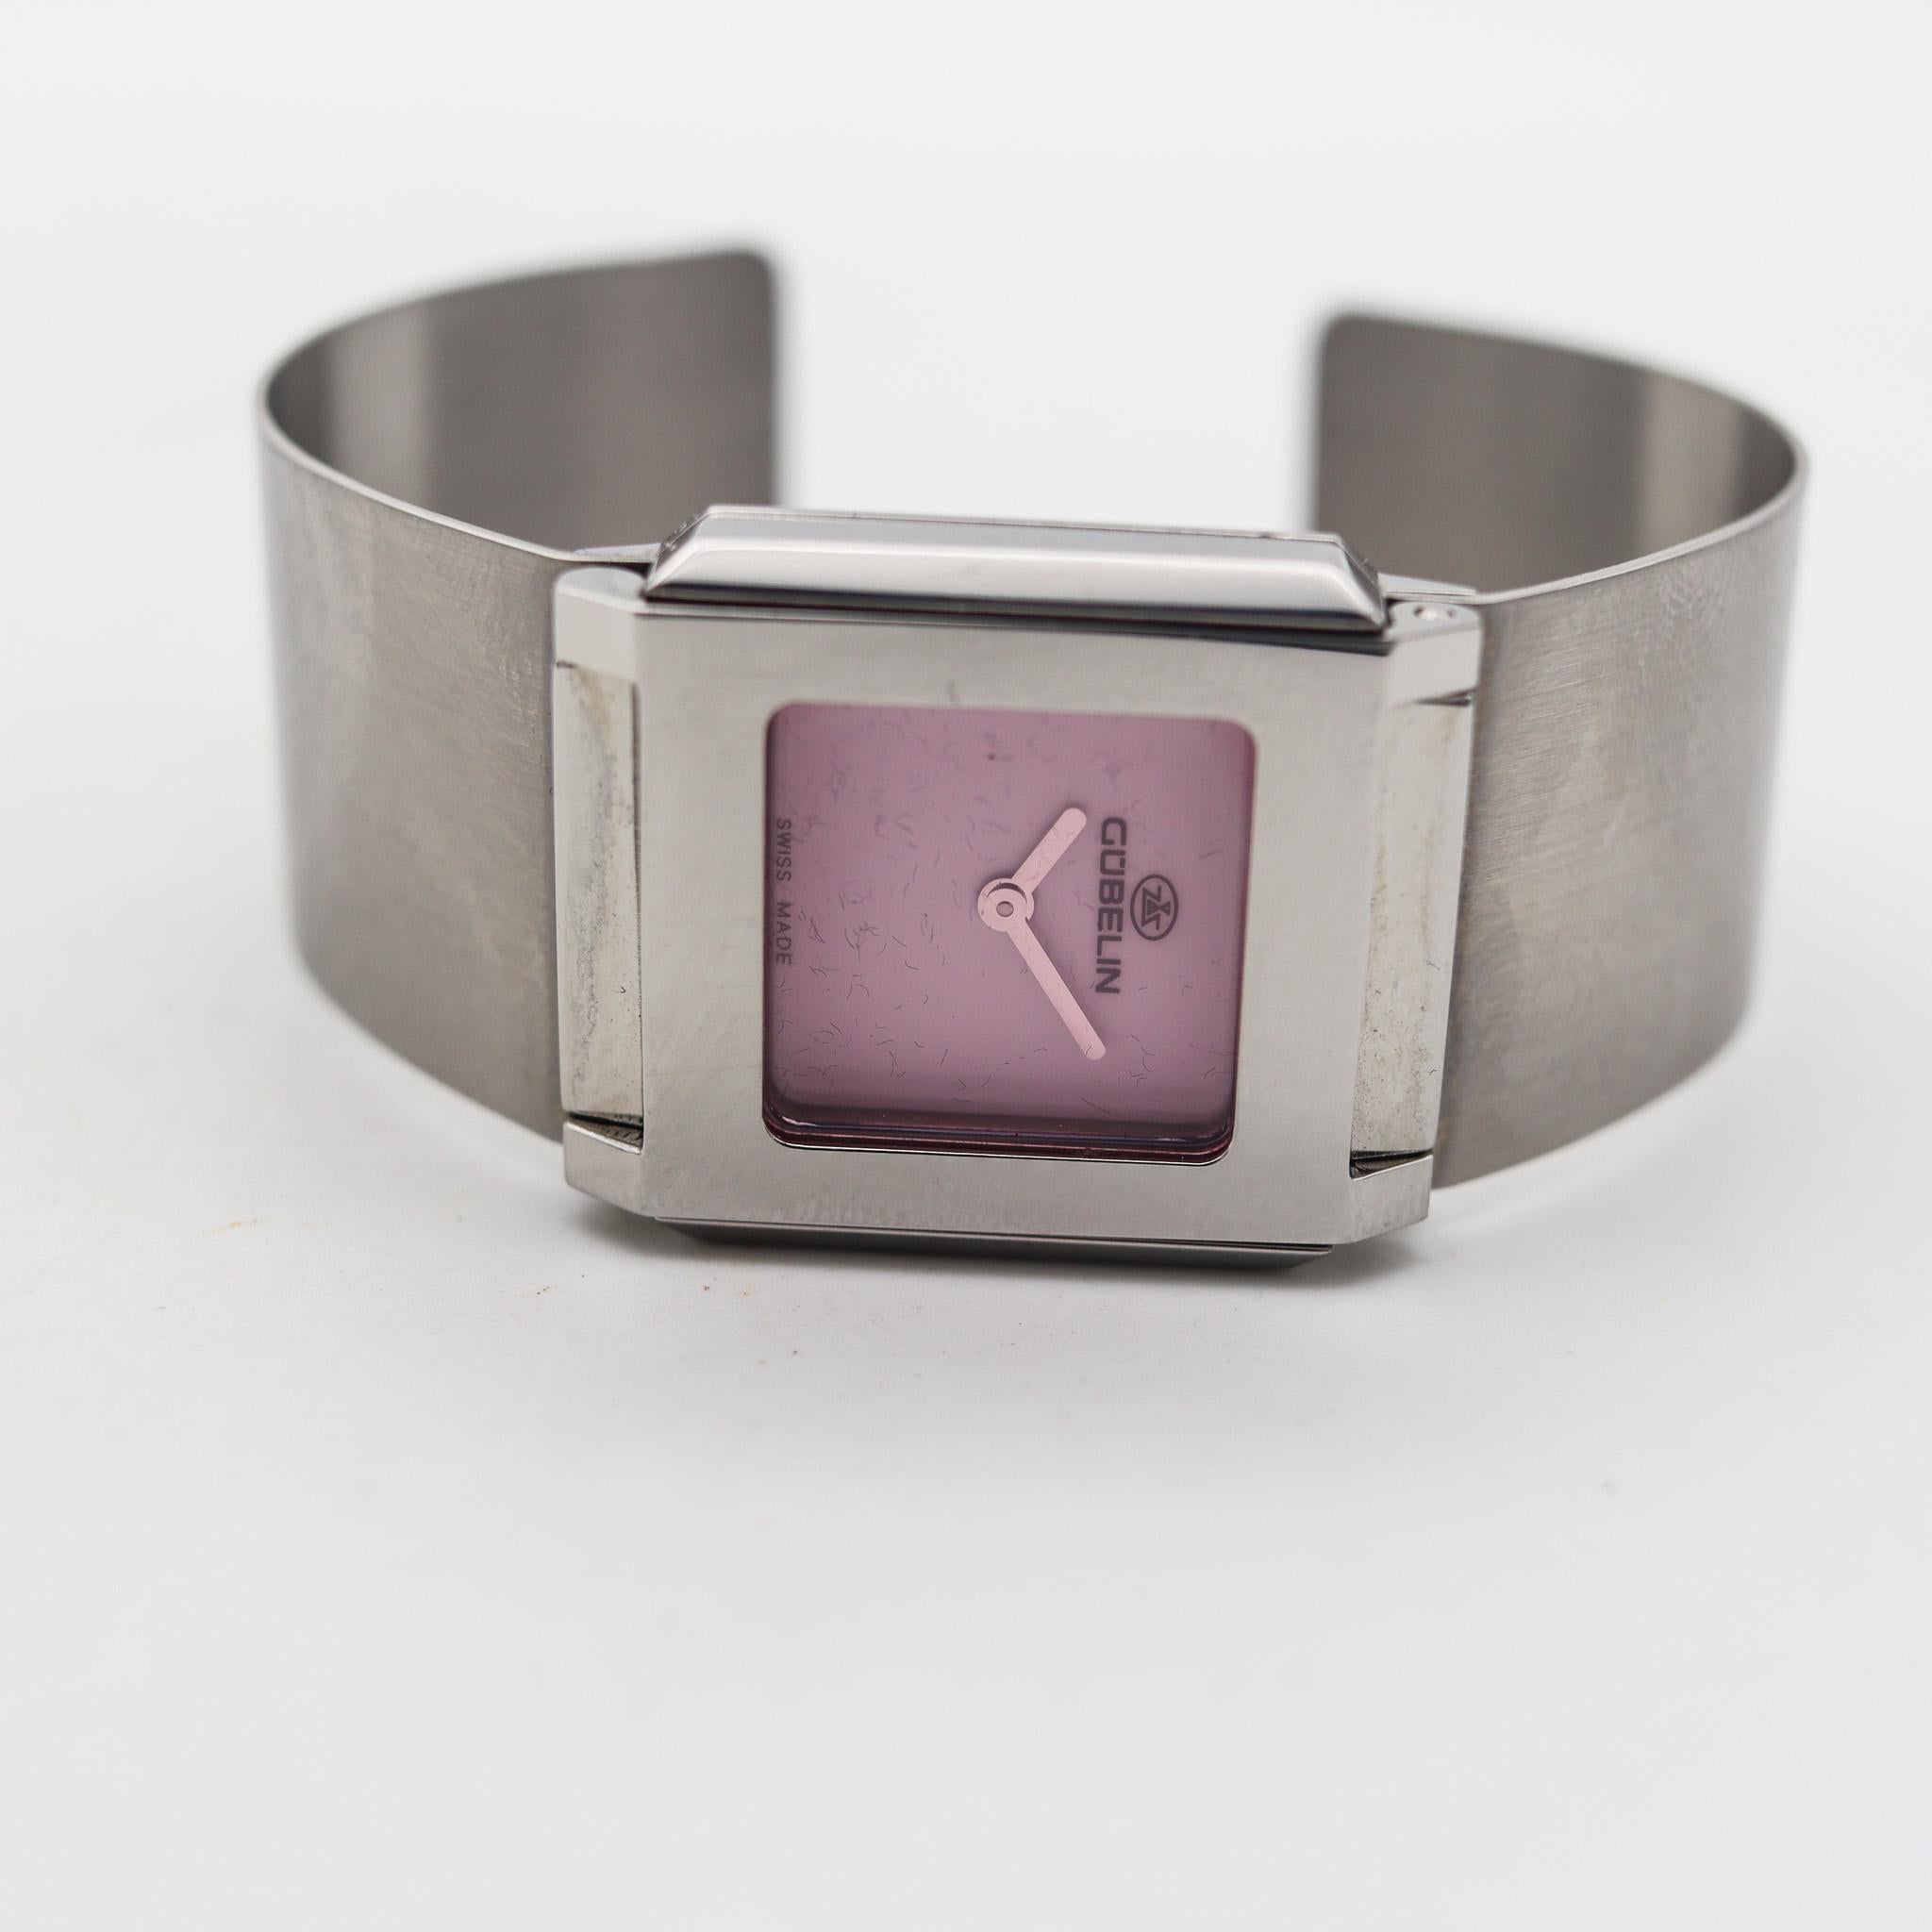 Gubelin Modernist Techno Cuff Bracelet Wrist Watch In Stainless Steel For Sale 5